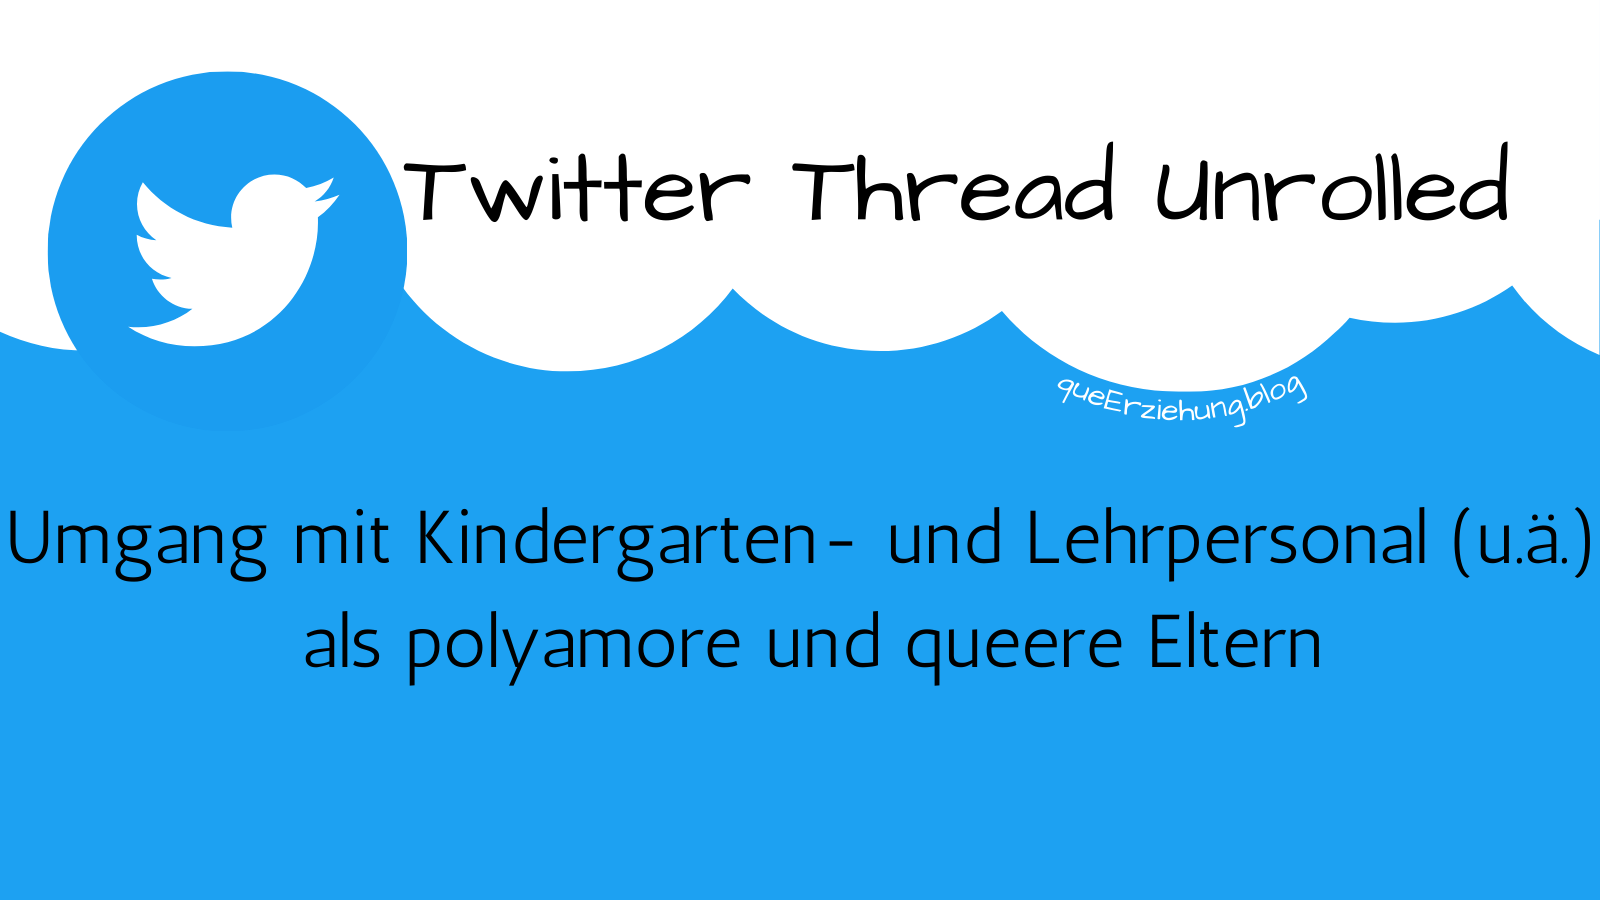 Headerbild: Twitter-Symbol und Farben, Text: Twitter Thread Unrolled Umgang mit Kindergarten- und Lehrpersonal (u.ä.) als polyamore und queere Eltern